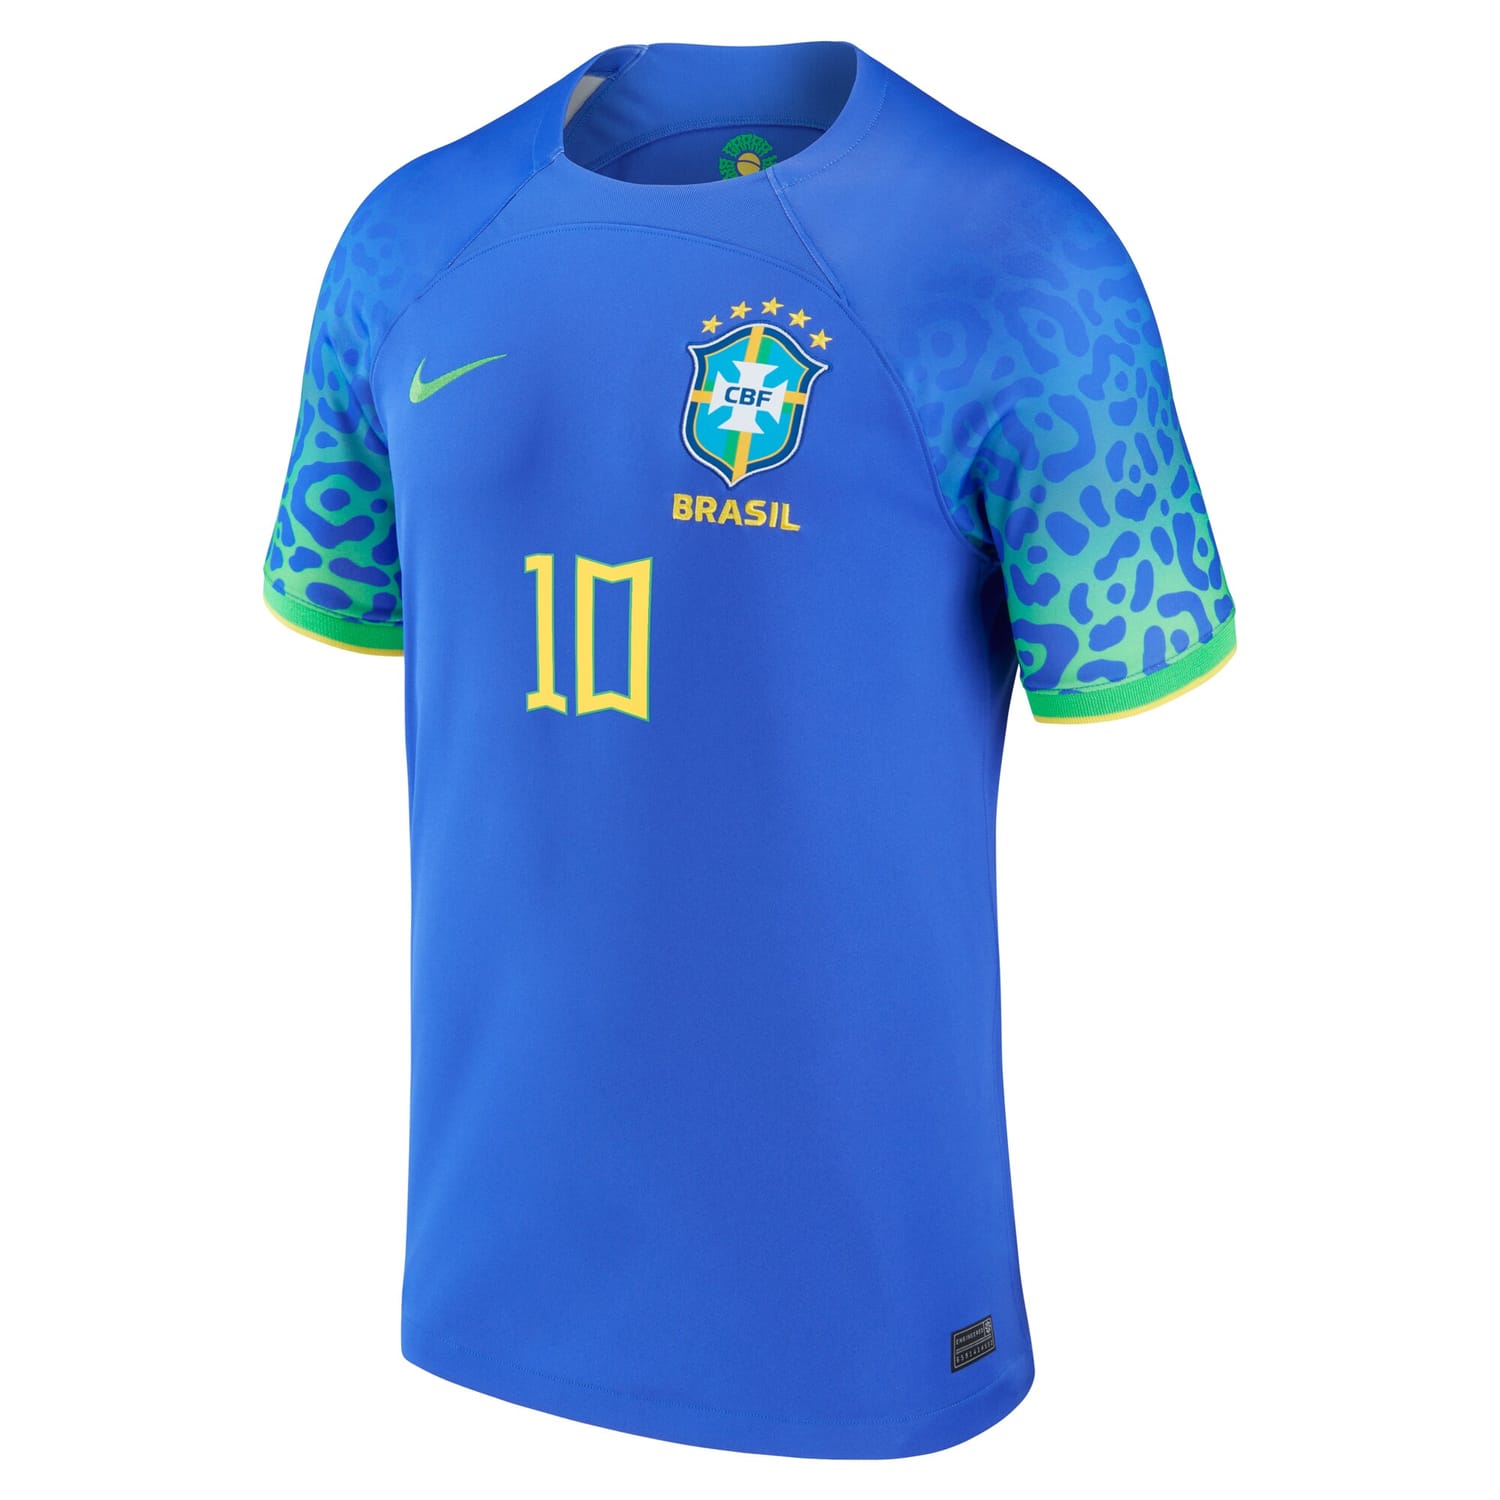 Brazil National Team Away Jersey Shirt Blue 2022-23 player Neymar Jr. printing for Men